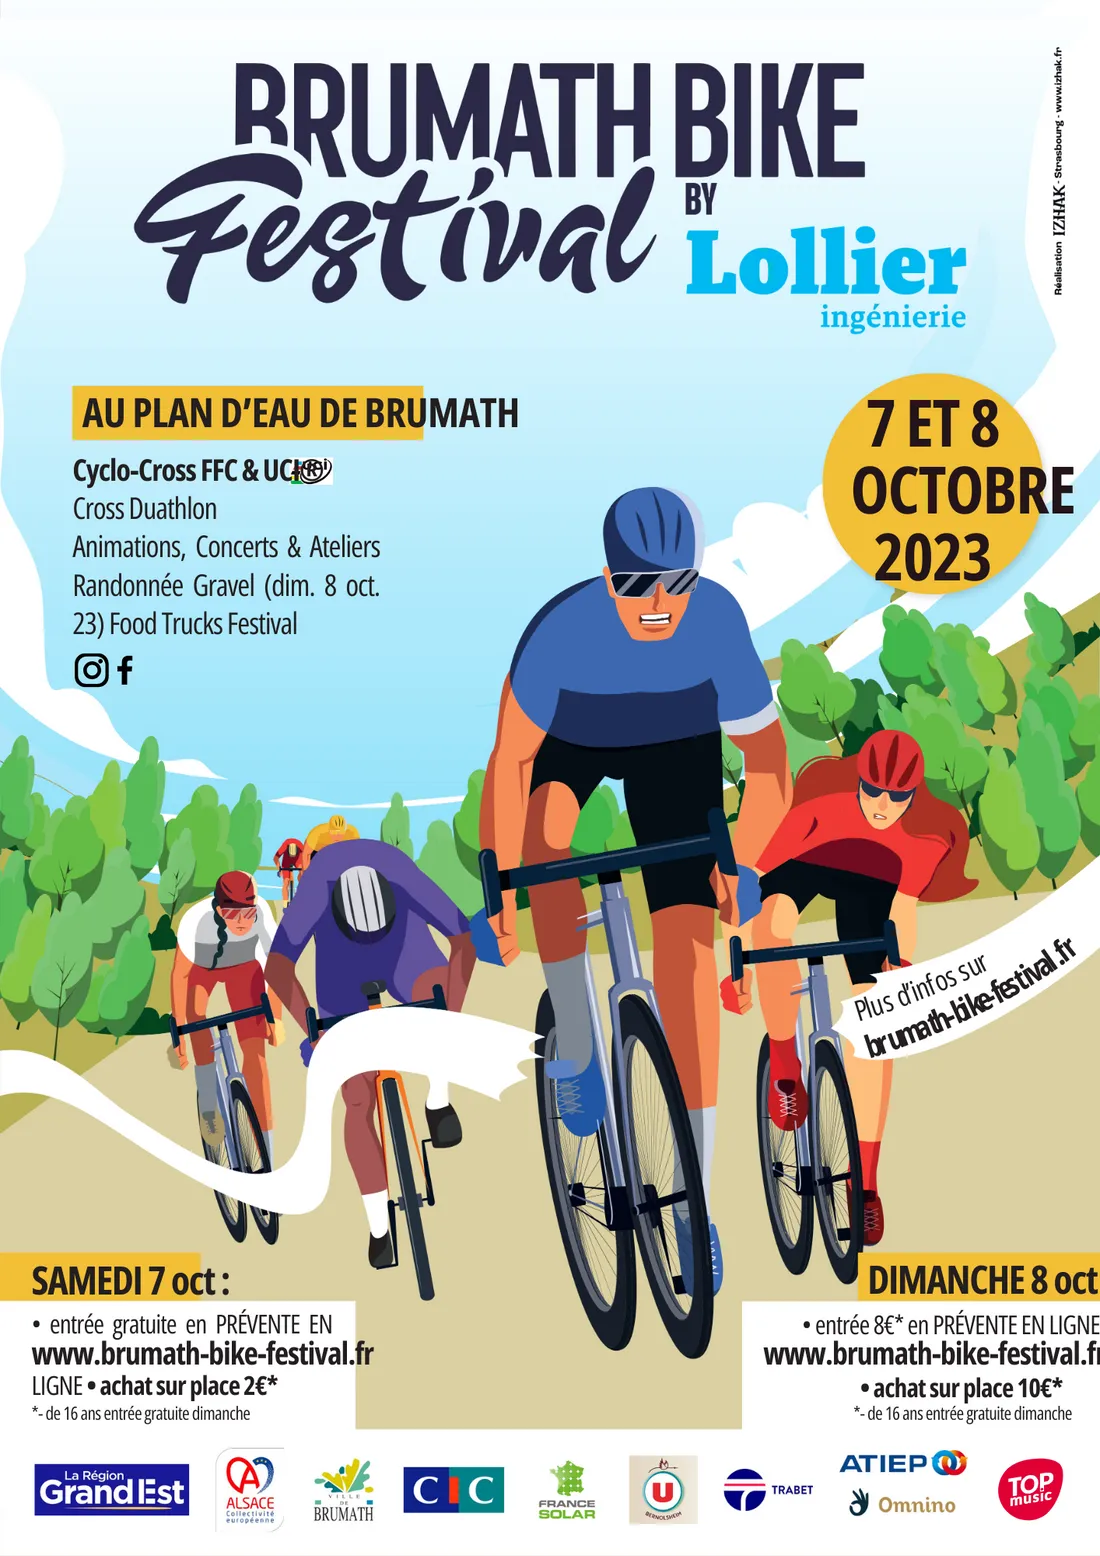 Brumath Bike Festival by Lollier Ingénierie